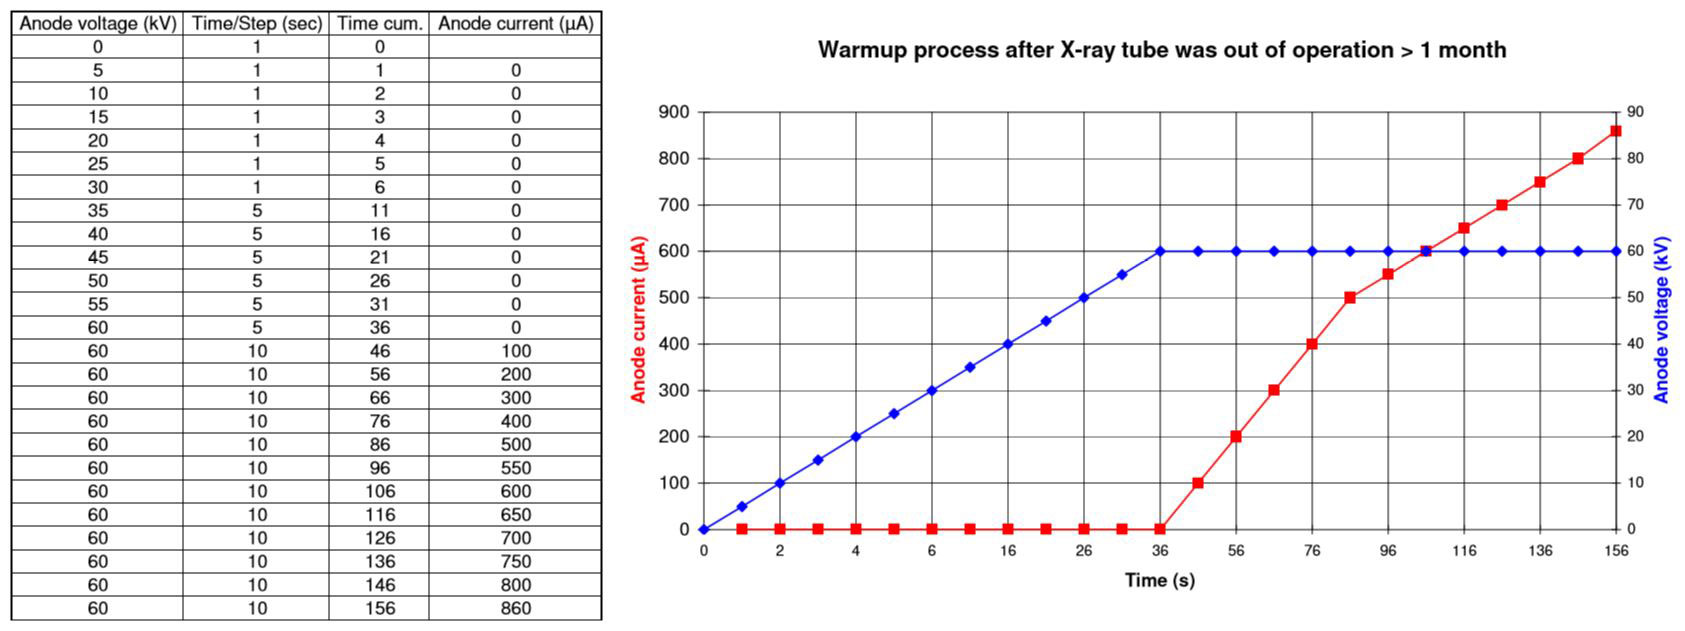 WarmUp Prozesse für 60kV Röntgenquellen außer Betrieb > 1 Monat